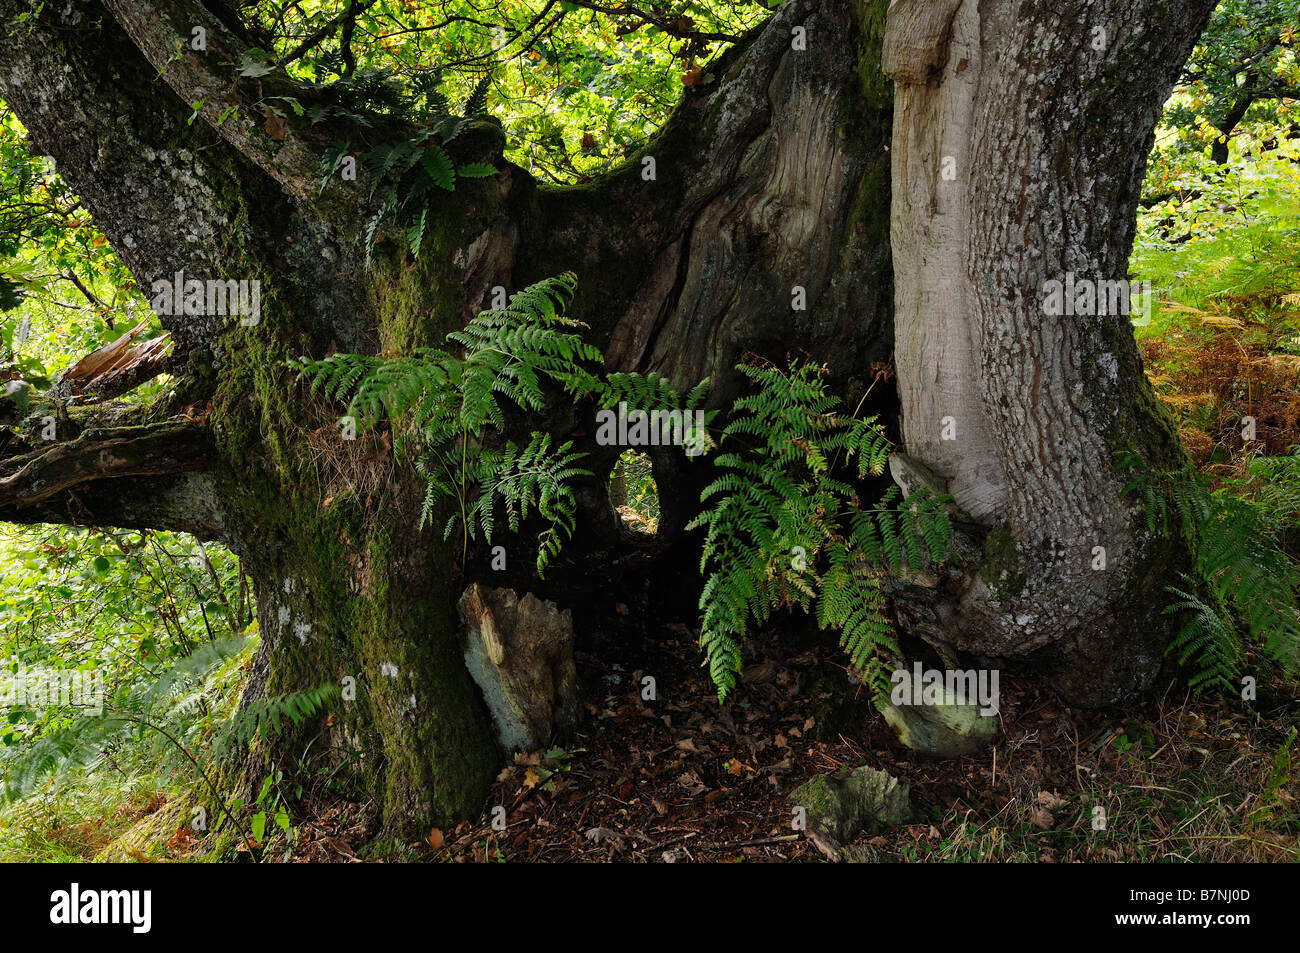 Les fougères poussent à partir du tronc d'un chêne centenaire dans près de bois sauvage Perthshire Scotland UK Killin Banque D'Images